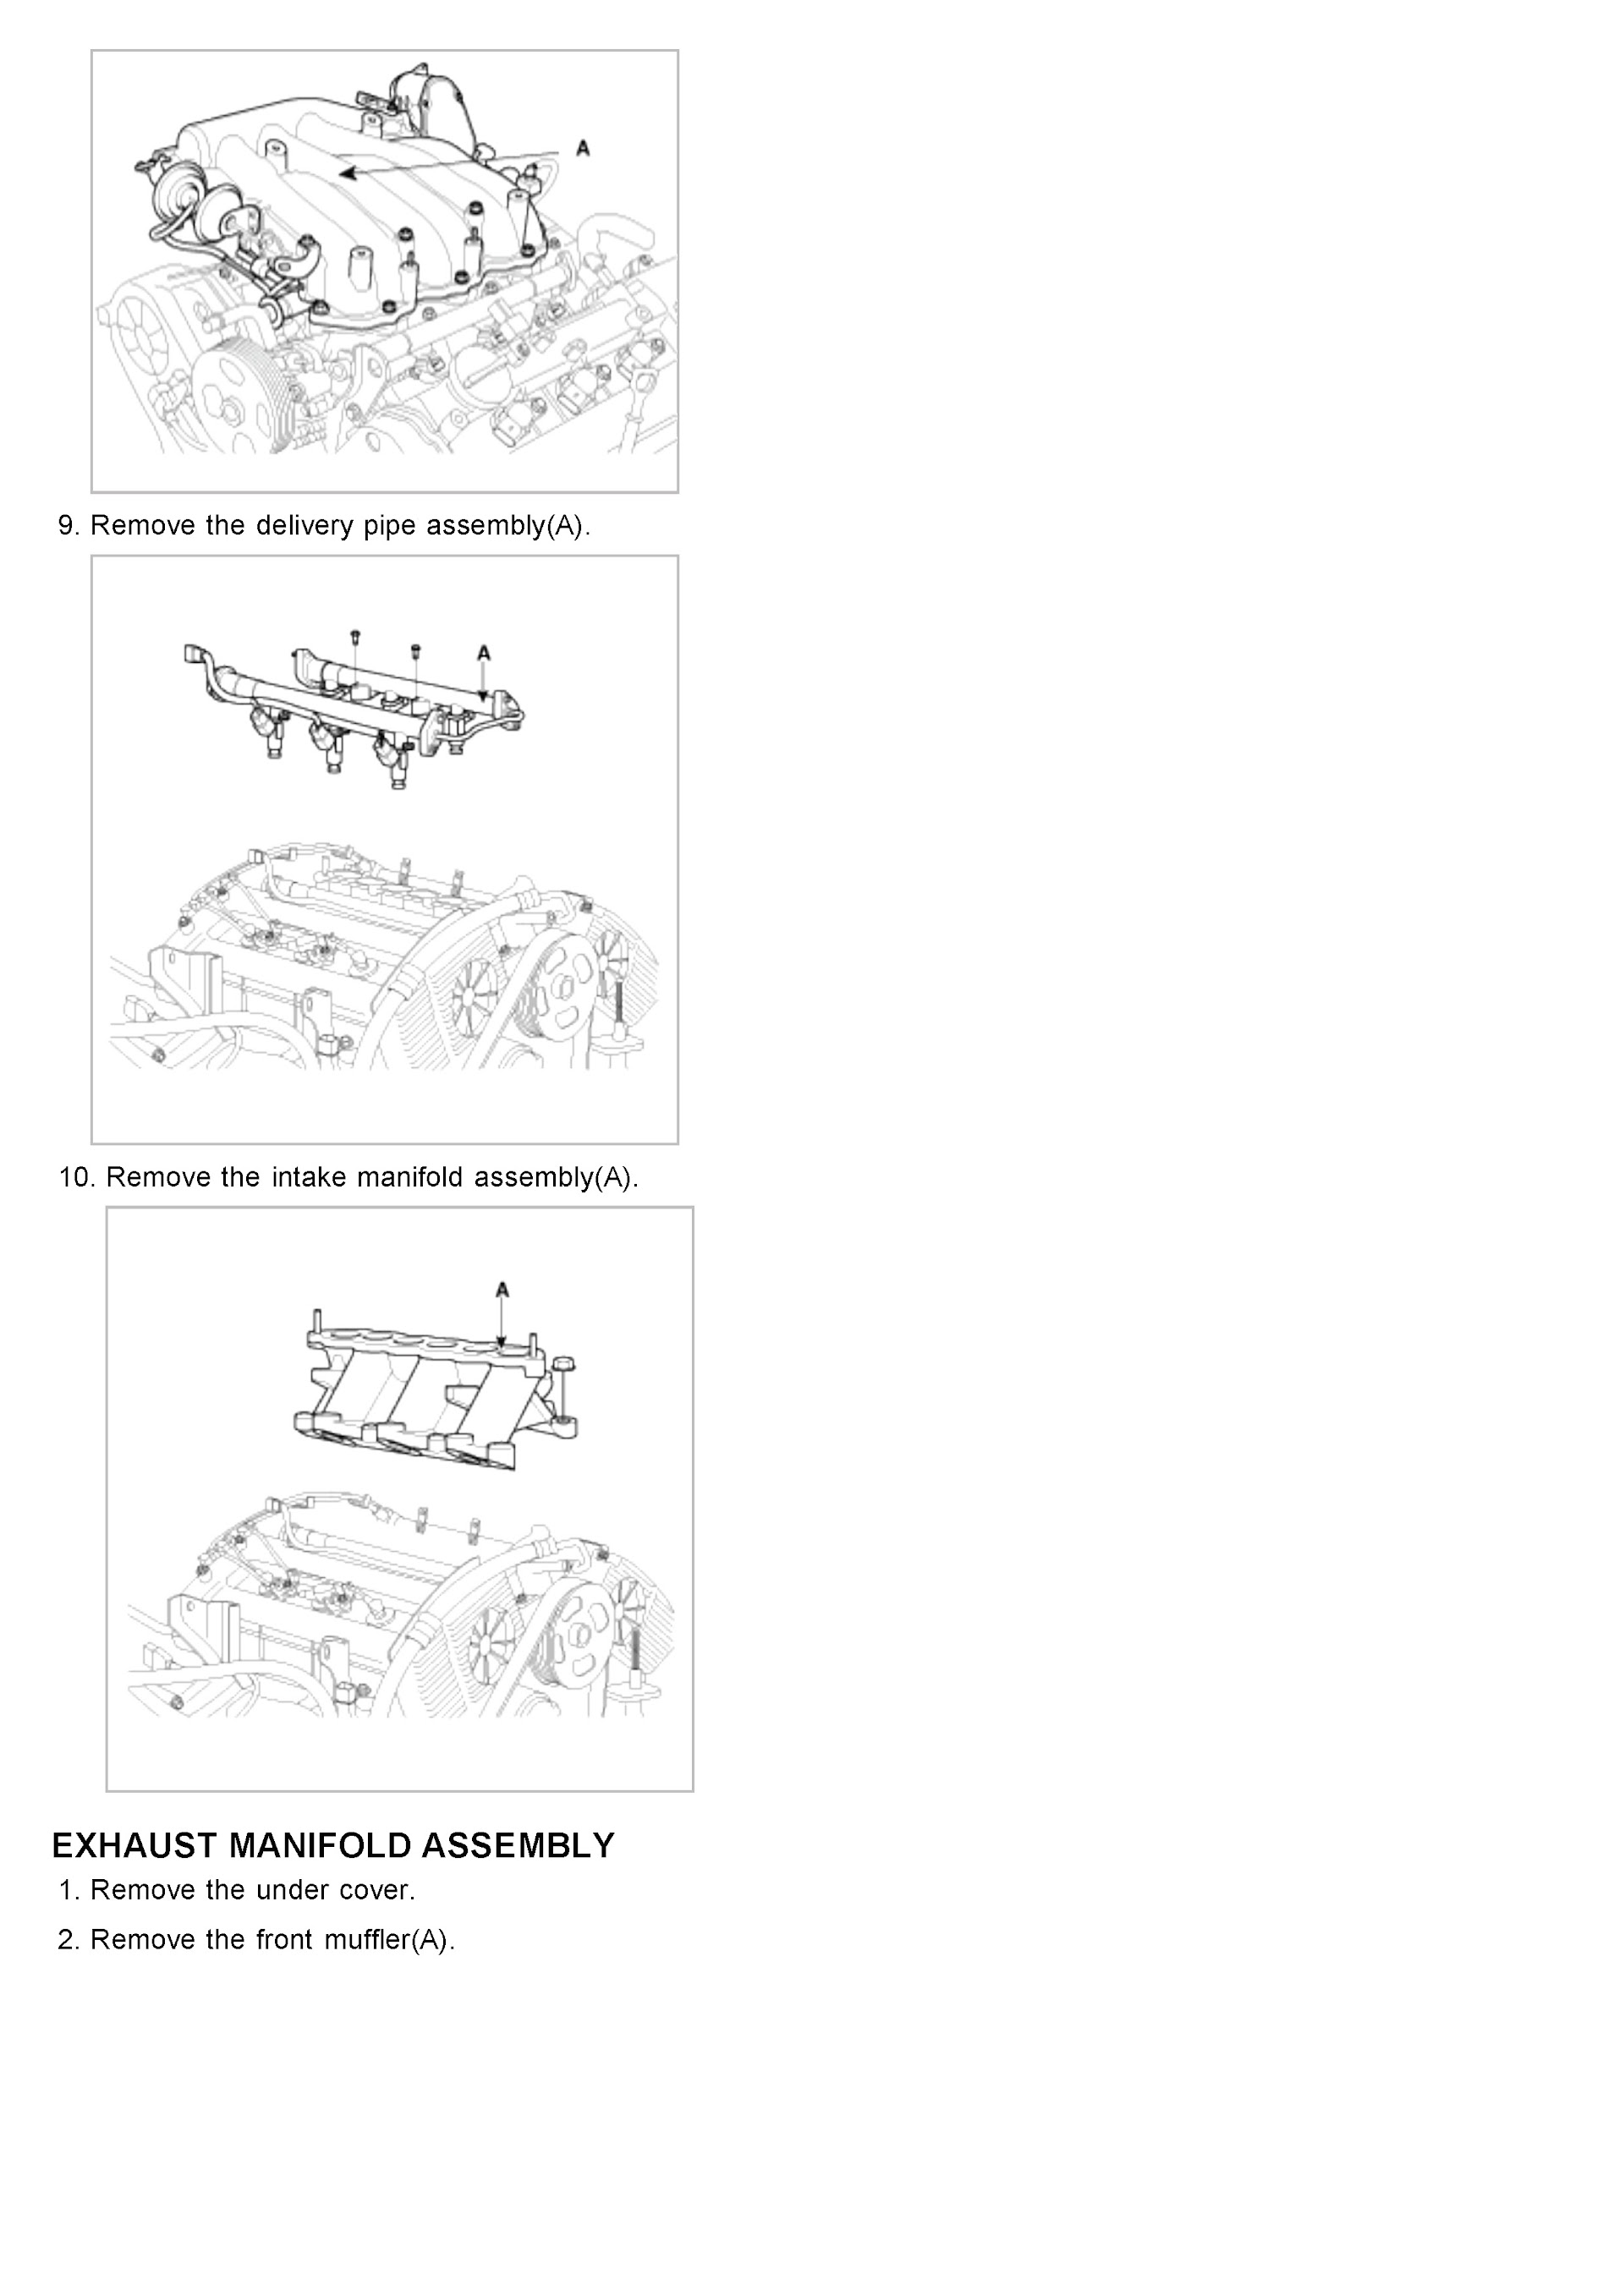 2009 Kia Sedona Repair Manual